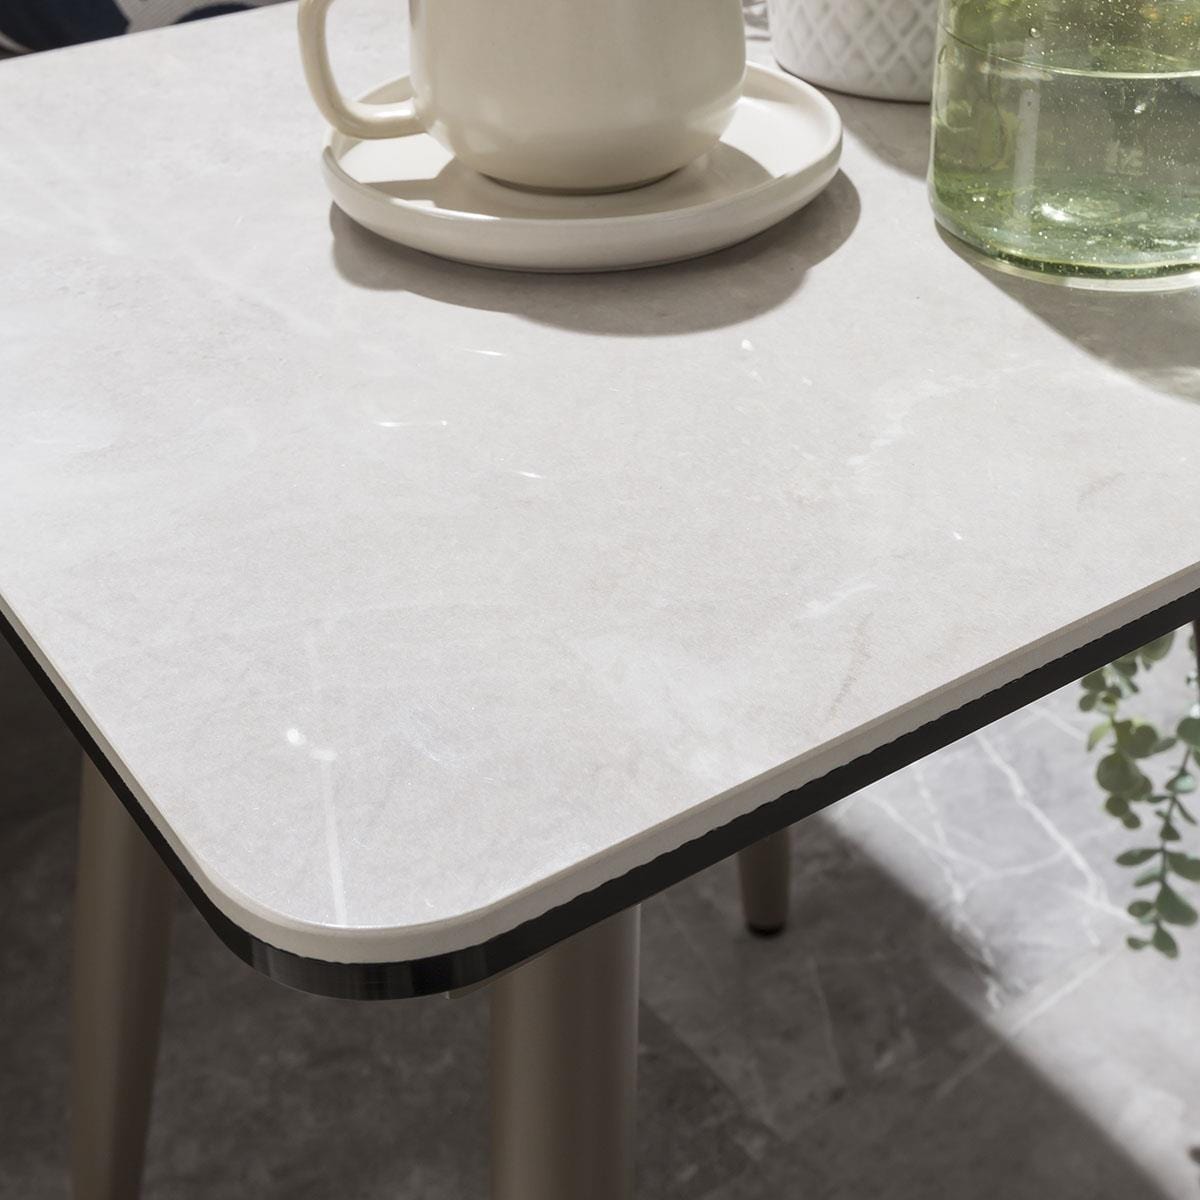 Quatropi Premium Garden Side Table | Aluminium & Grey Ceramic Top 45cm × 45cm